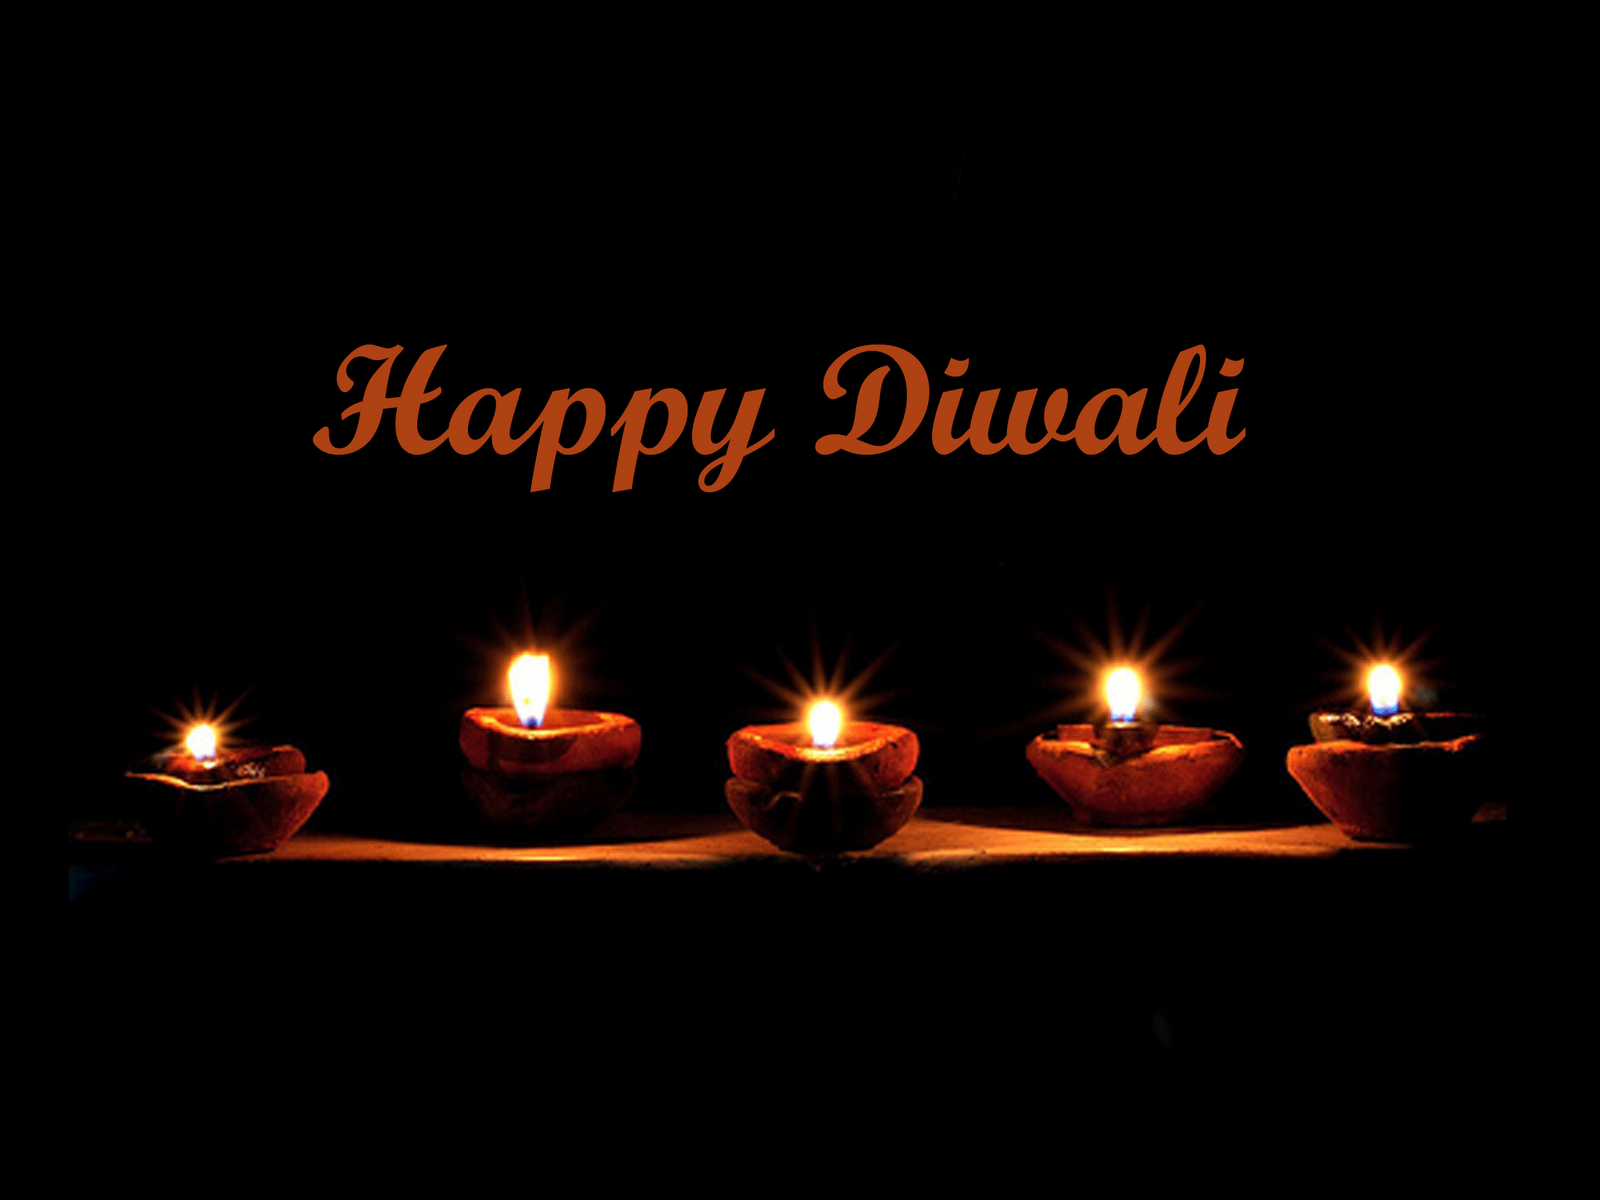 happy diwali fondos de pantalla hd widescreen,vela,encendiendo,diwali,oscuridad,fiesta